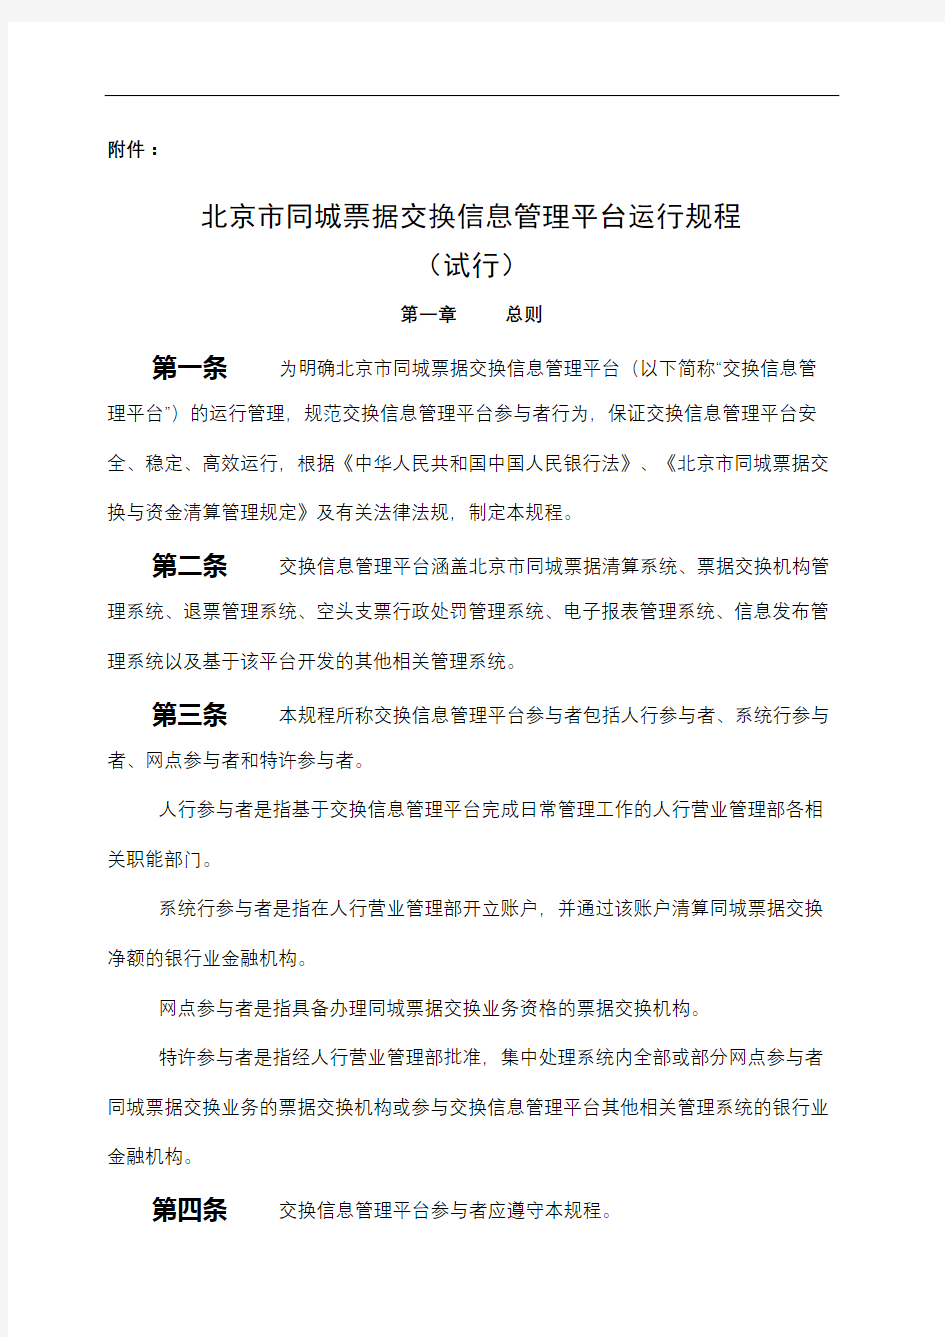 北京市同城票据交换信息管理平台运行规程